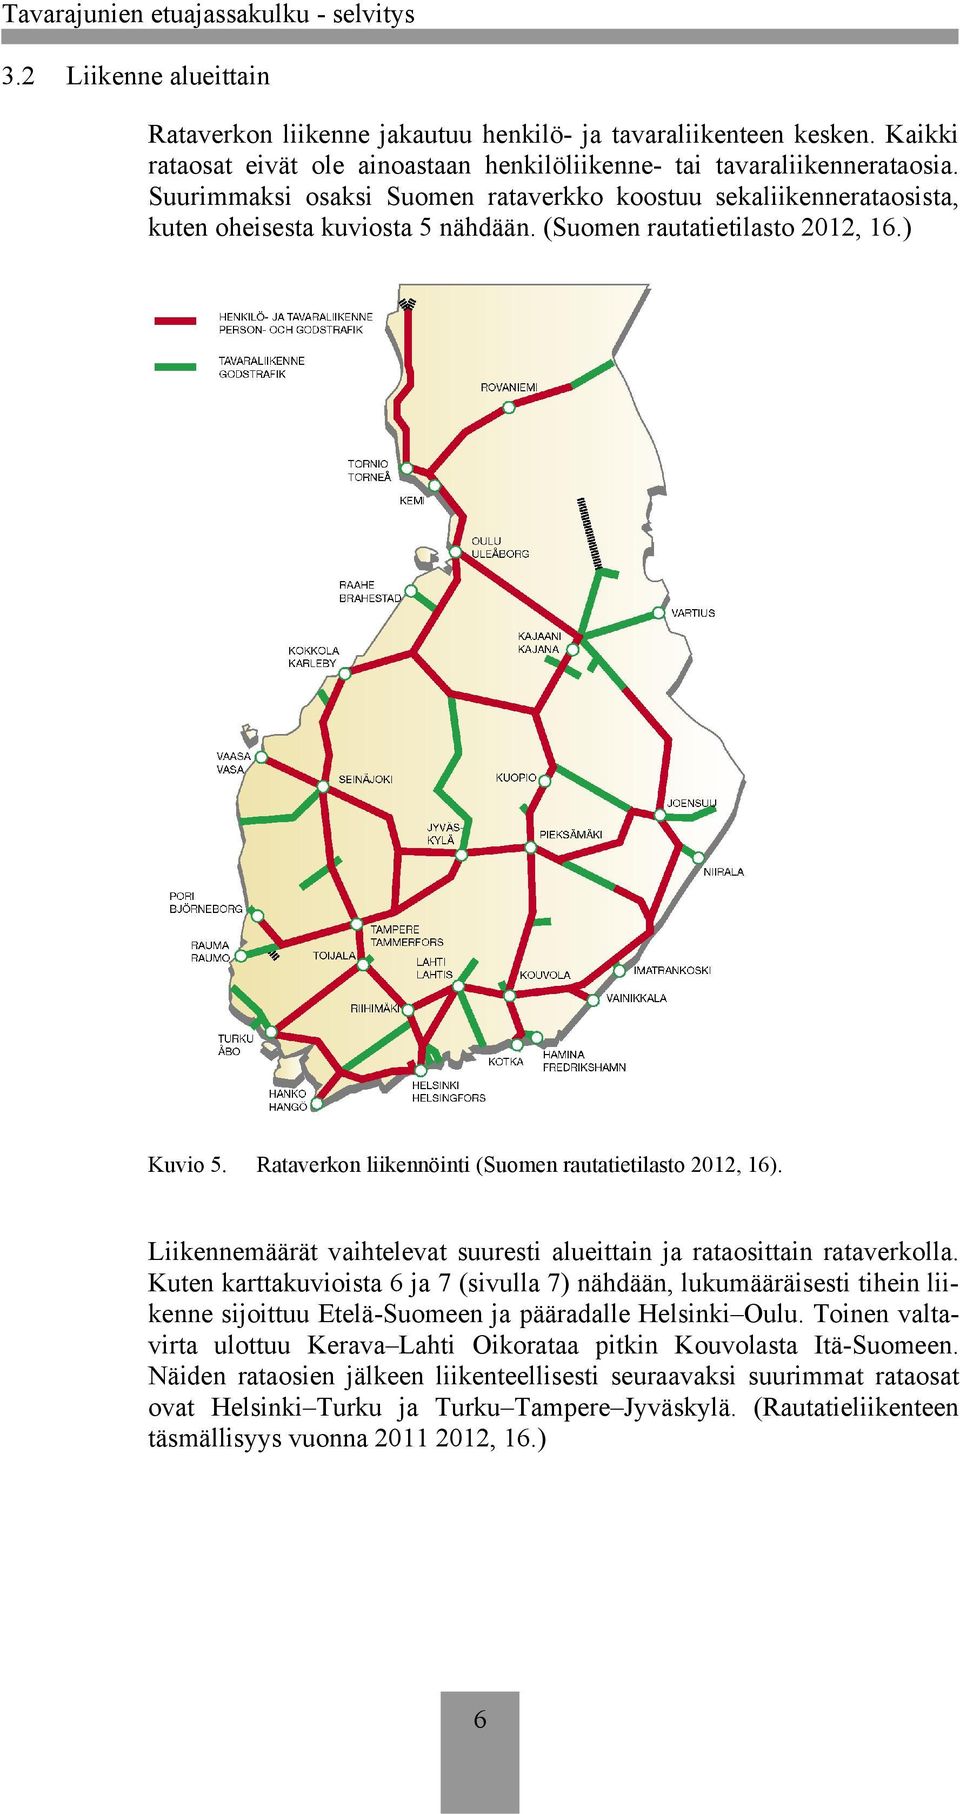 Rataverkon liikennöinti (Suomen rautatietilasto 2012, 16). Liikennemäärät vaihtelevat suuresti alueittain ja rataosittain rataverkolla.